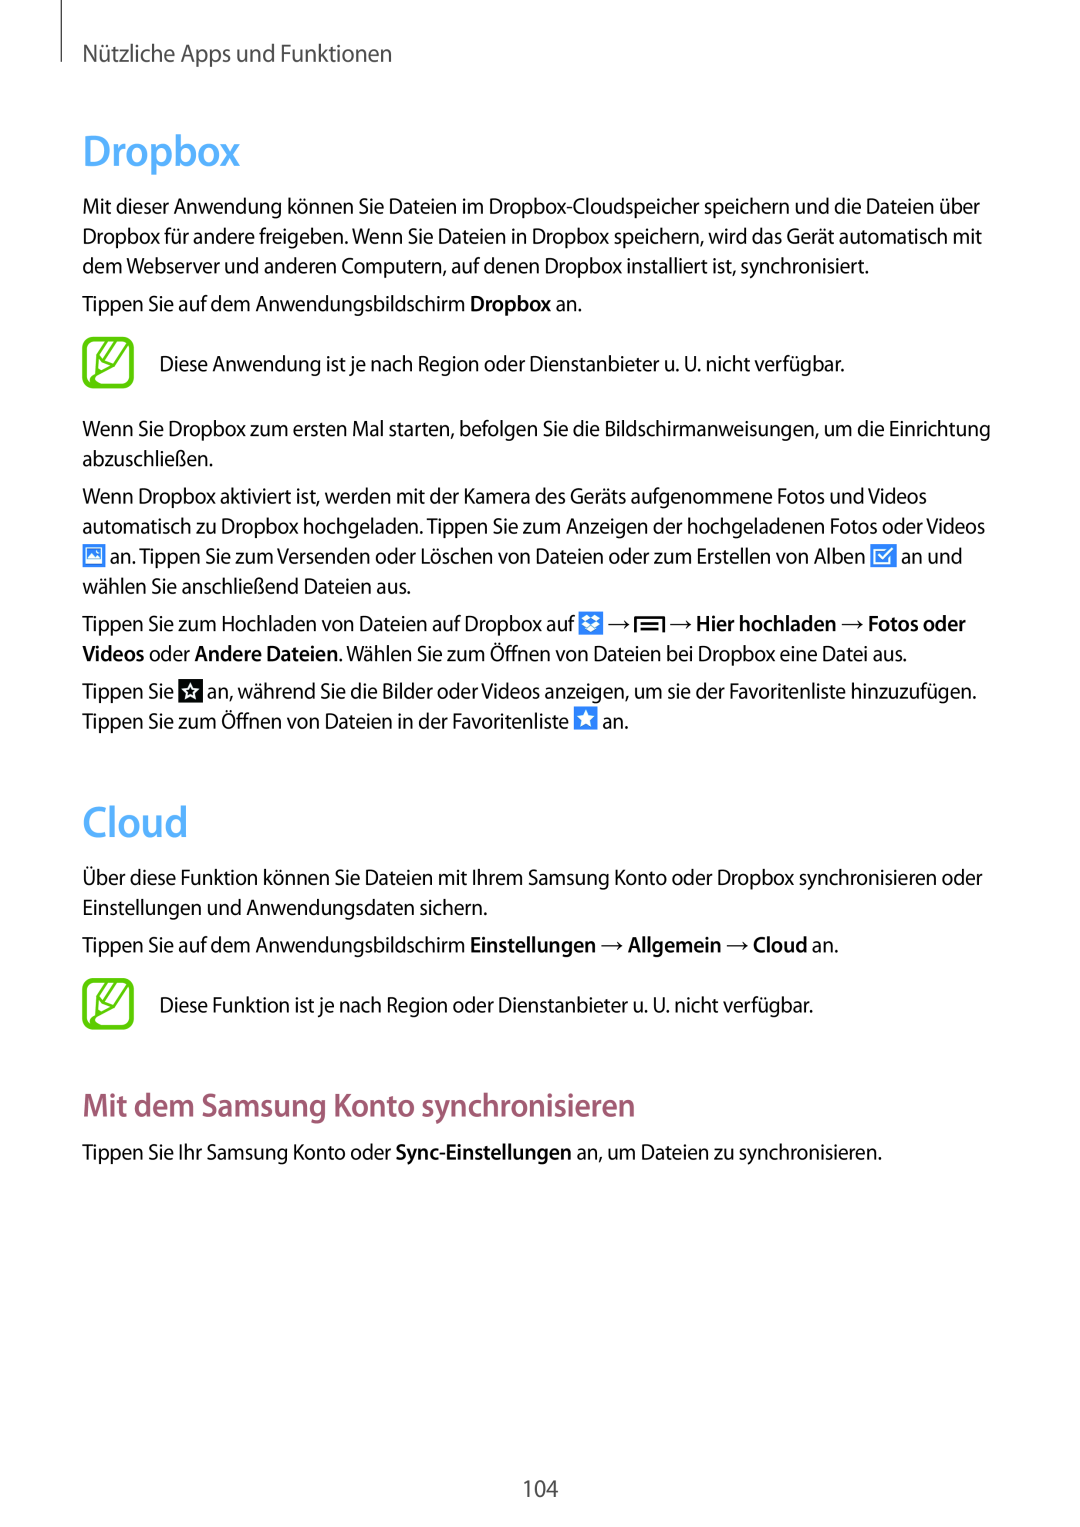 Samsung SM-P6050ZKAEUR manual Dropbox, Cloud, Mit dem Samsung Konto synchronisieren, Nützliche Apps und Funktionen 